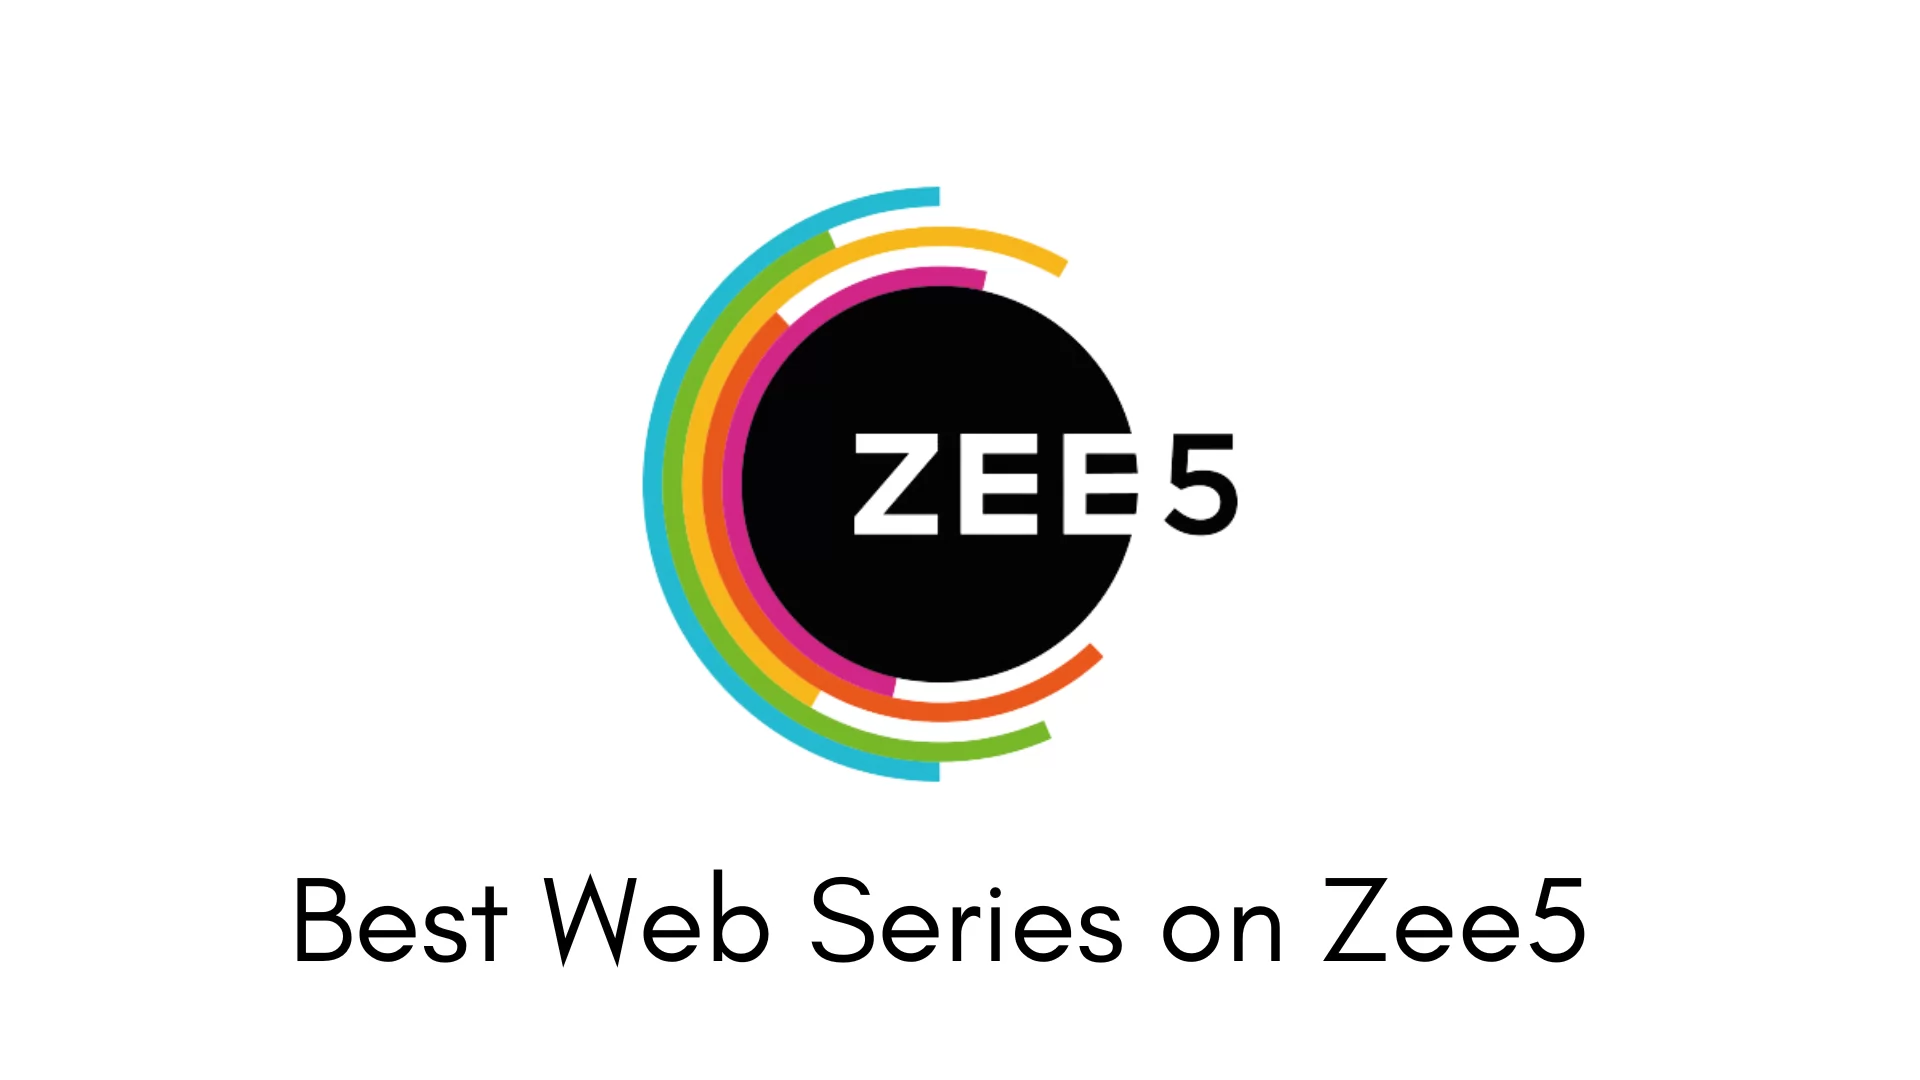 Best Web Series on Zee5